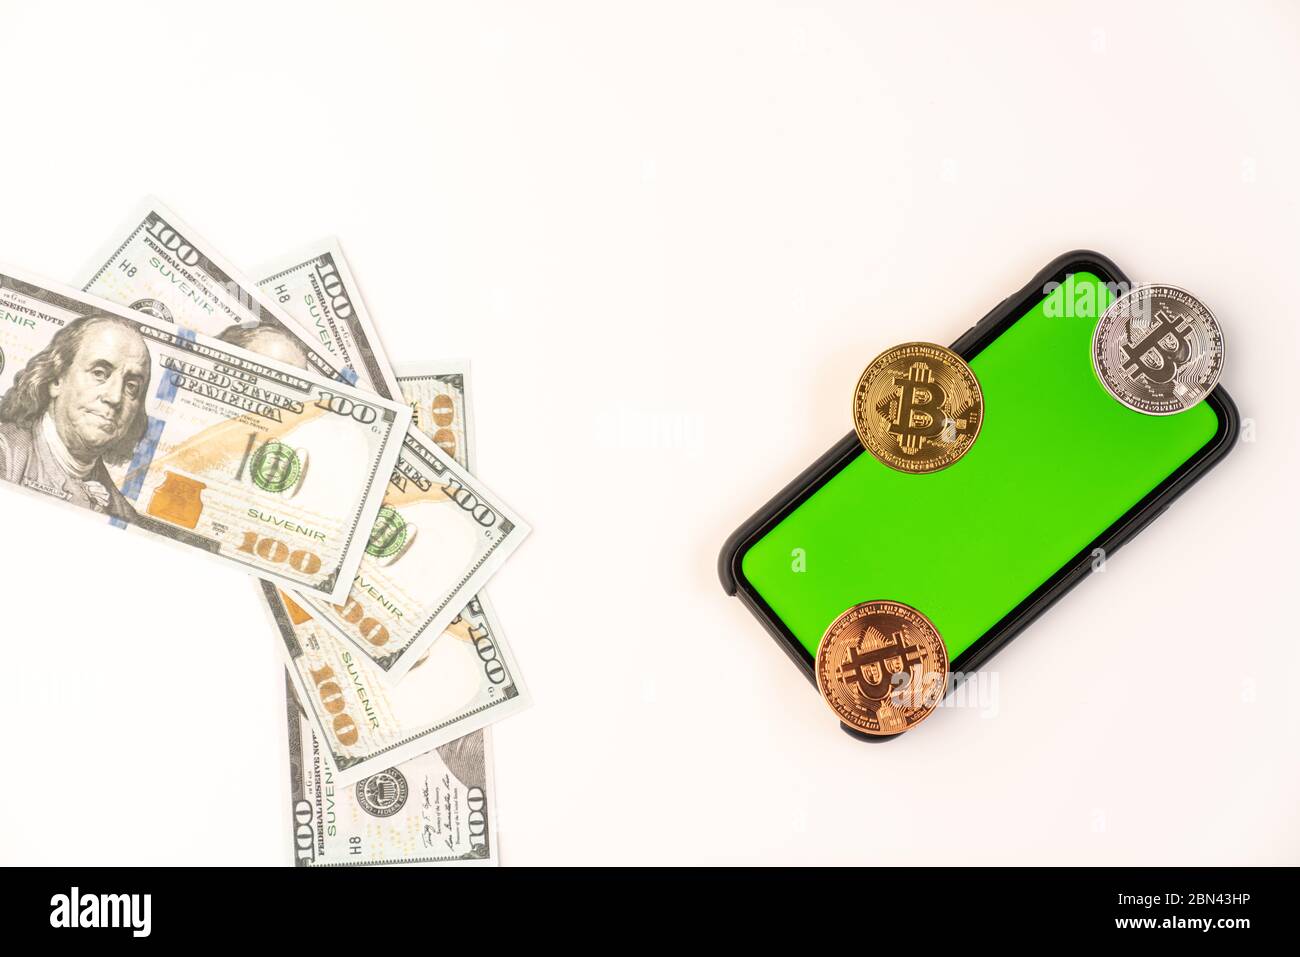 Bollette in dollari USA e monete in bitcoin su uno smartphone con schermo verde isolato su sfondo bianco Foto Stock